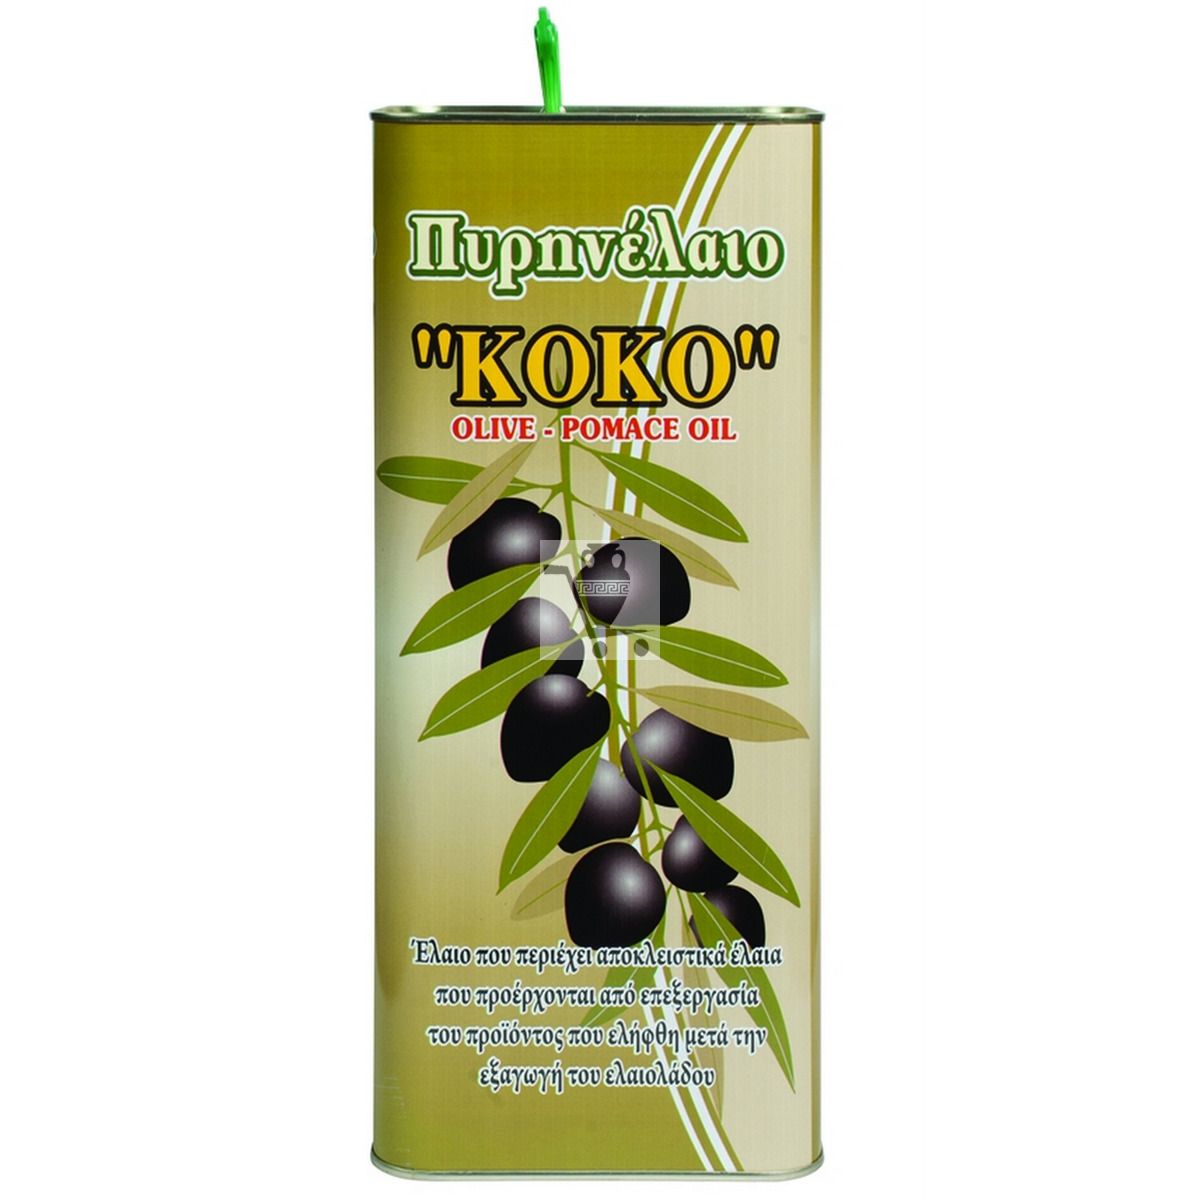 ТОП-20 лучшего оливкового масла: как выбрать, отзывы. Рейтинг лучших оливковых масел на 2022 год